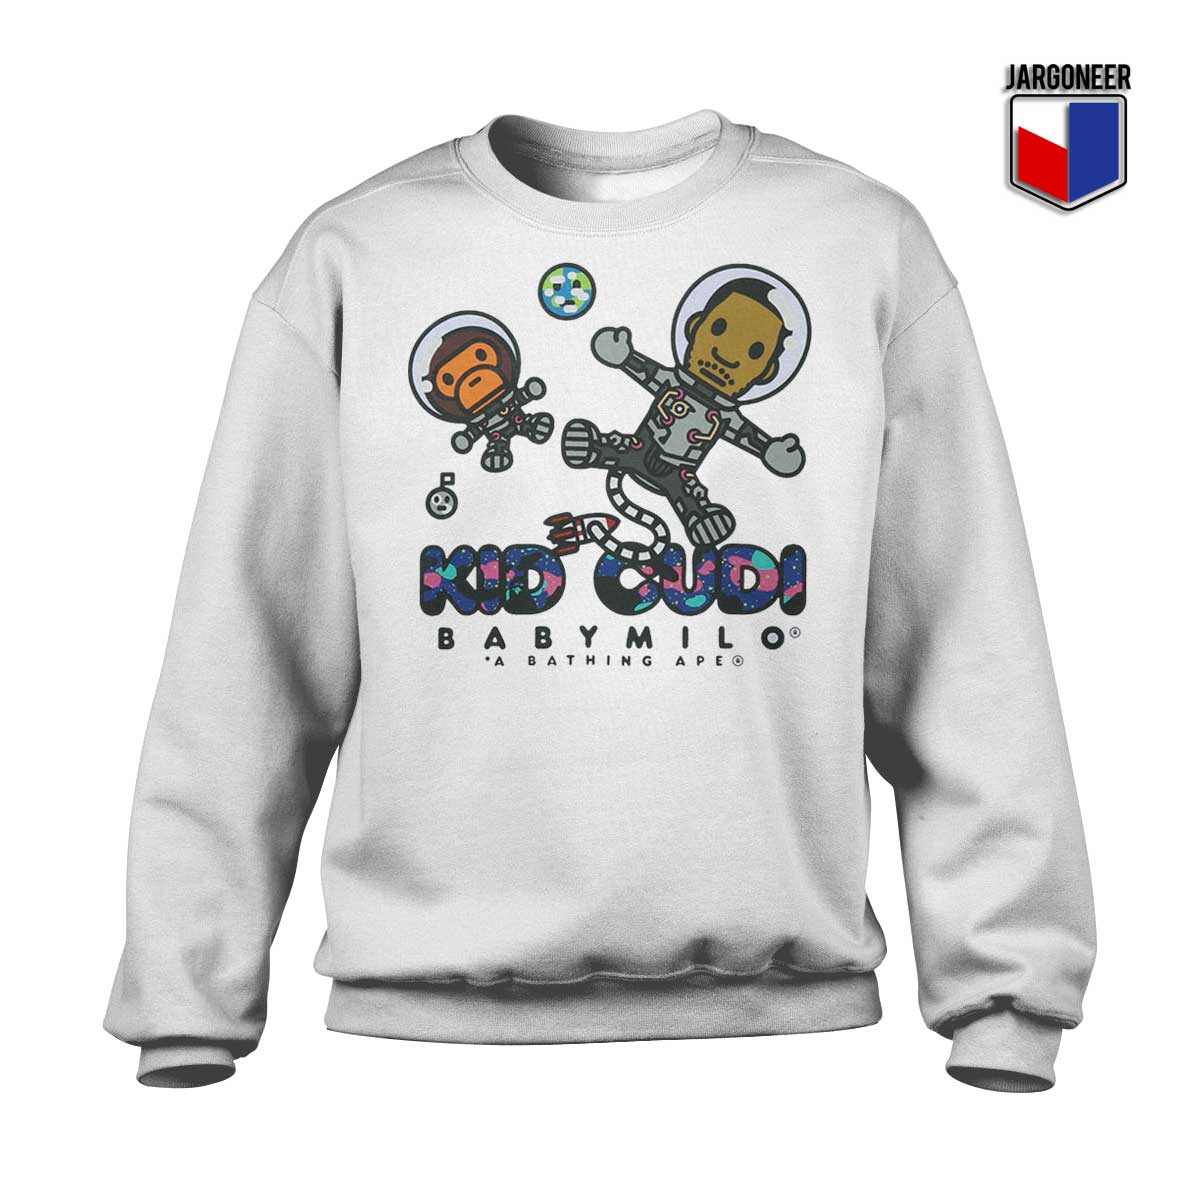 Kid Cudi Baby Milo Moon Sweatshirt - Shop Unique Graphic Cool Shirt Designs